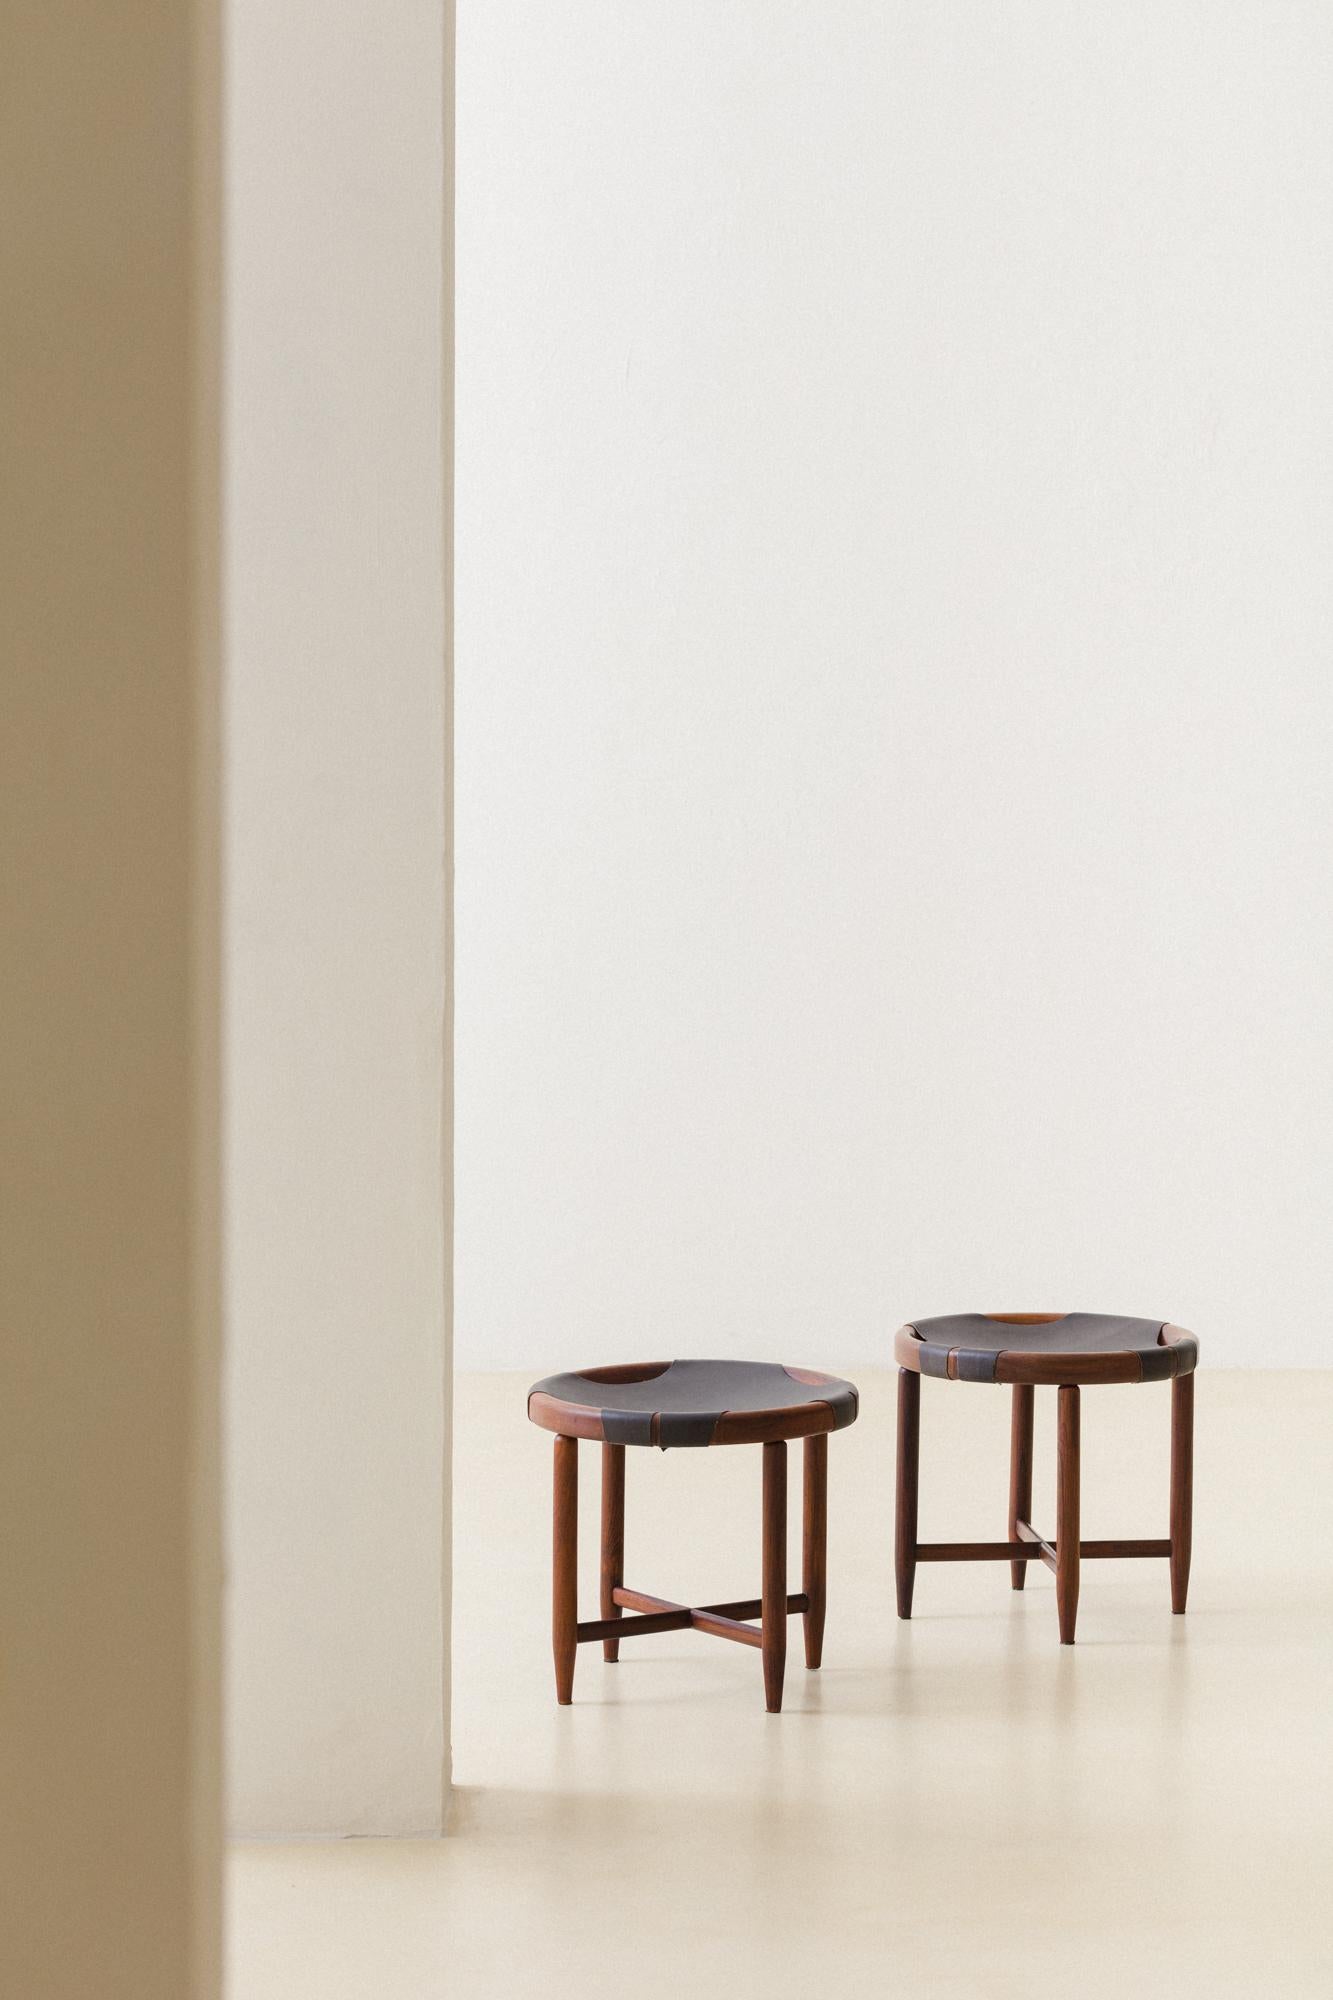 Dieses Hockerpaar aus massivem Palisanderholz wurde in den 1960er Jahren von Cantù Móveis e Interiores Ltda. hergestellt.

Das Stück aus massivem Palisanderholz ist gedrechselt und hat abgerundete Kanten und spitze Füße. Die Sitze sind aus